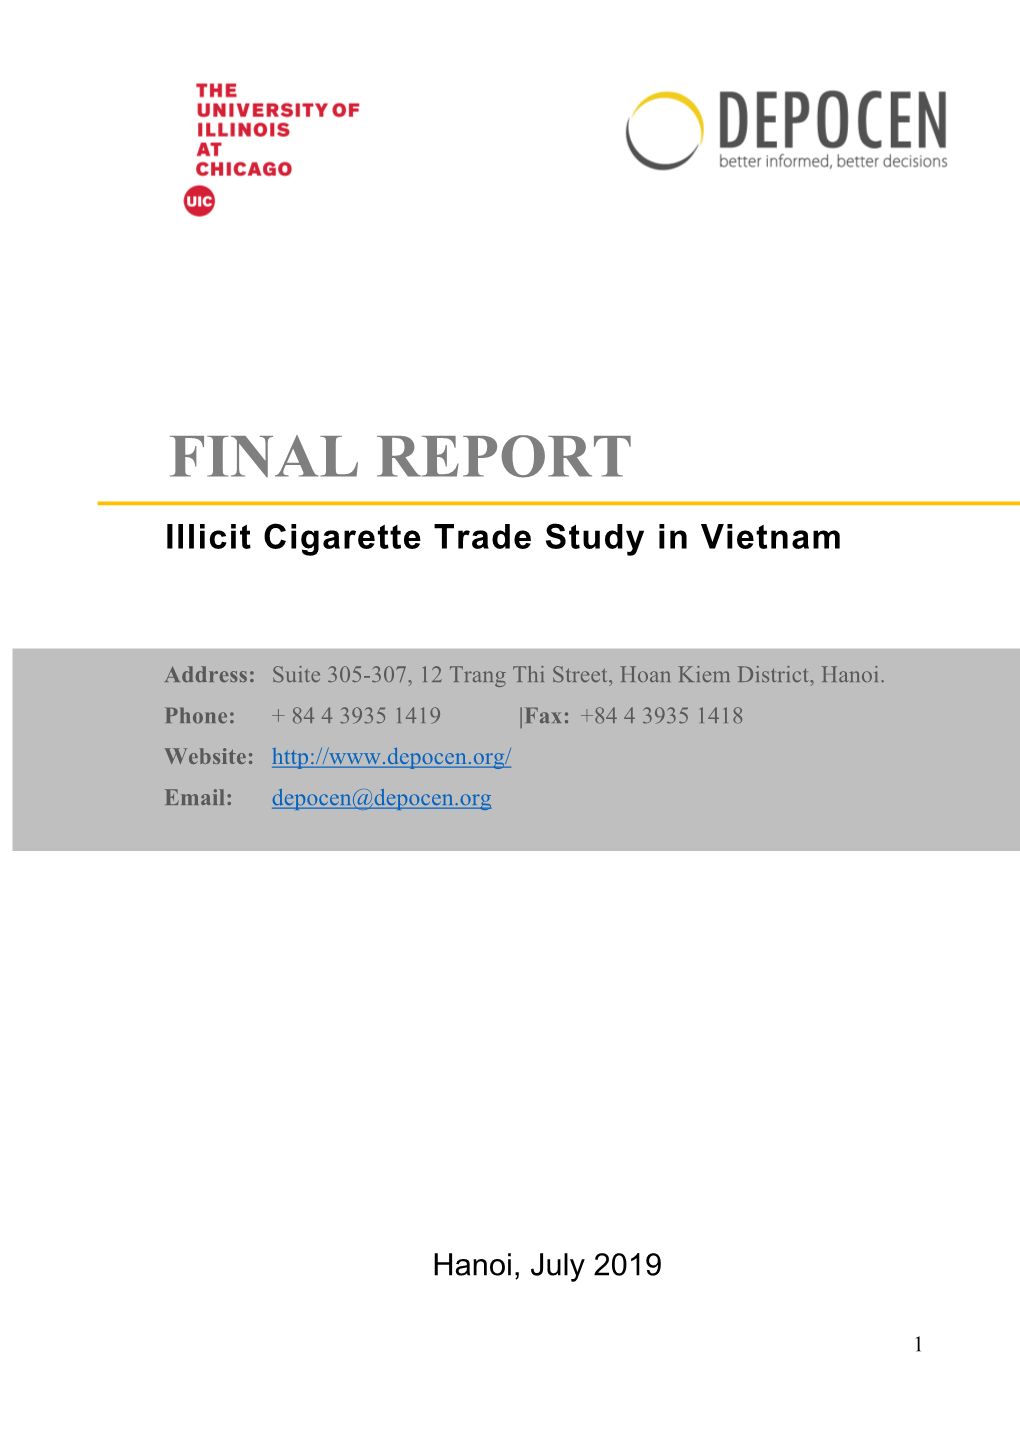 FINAL REPORT Illicit Cigarette Trade Study in Vietnam